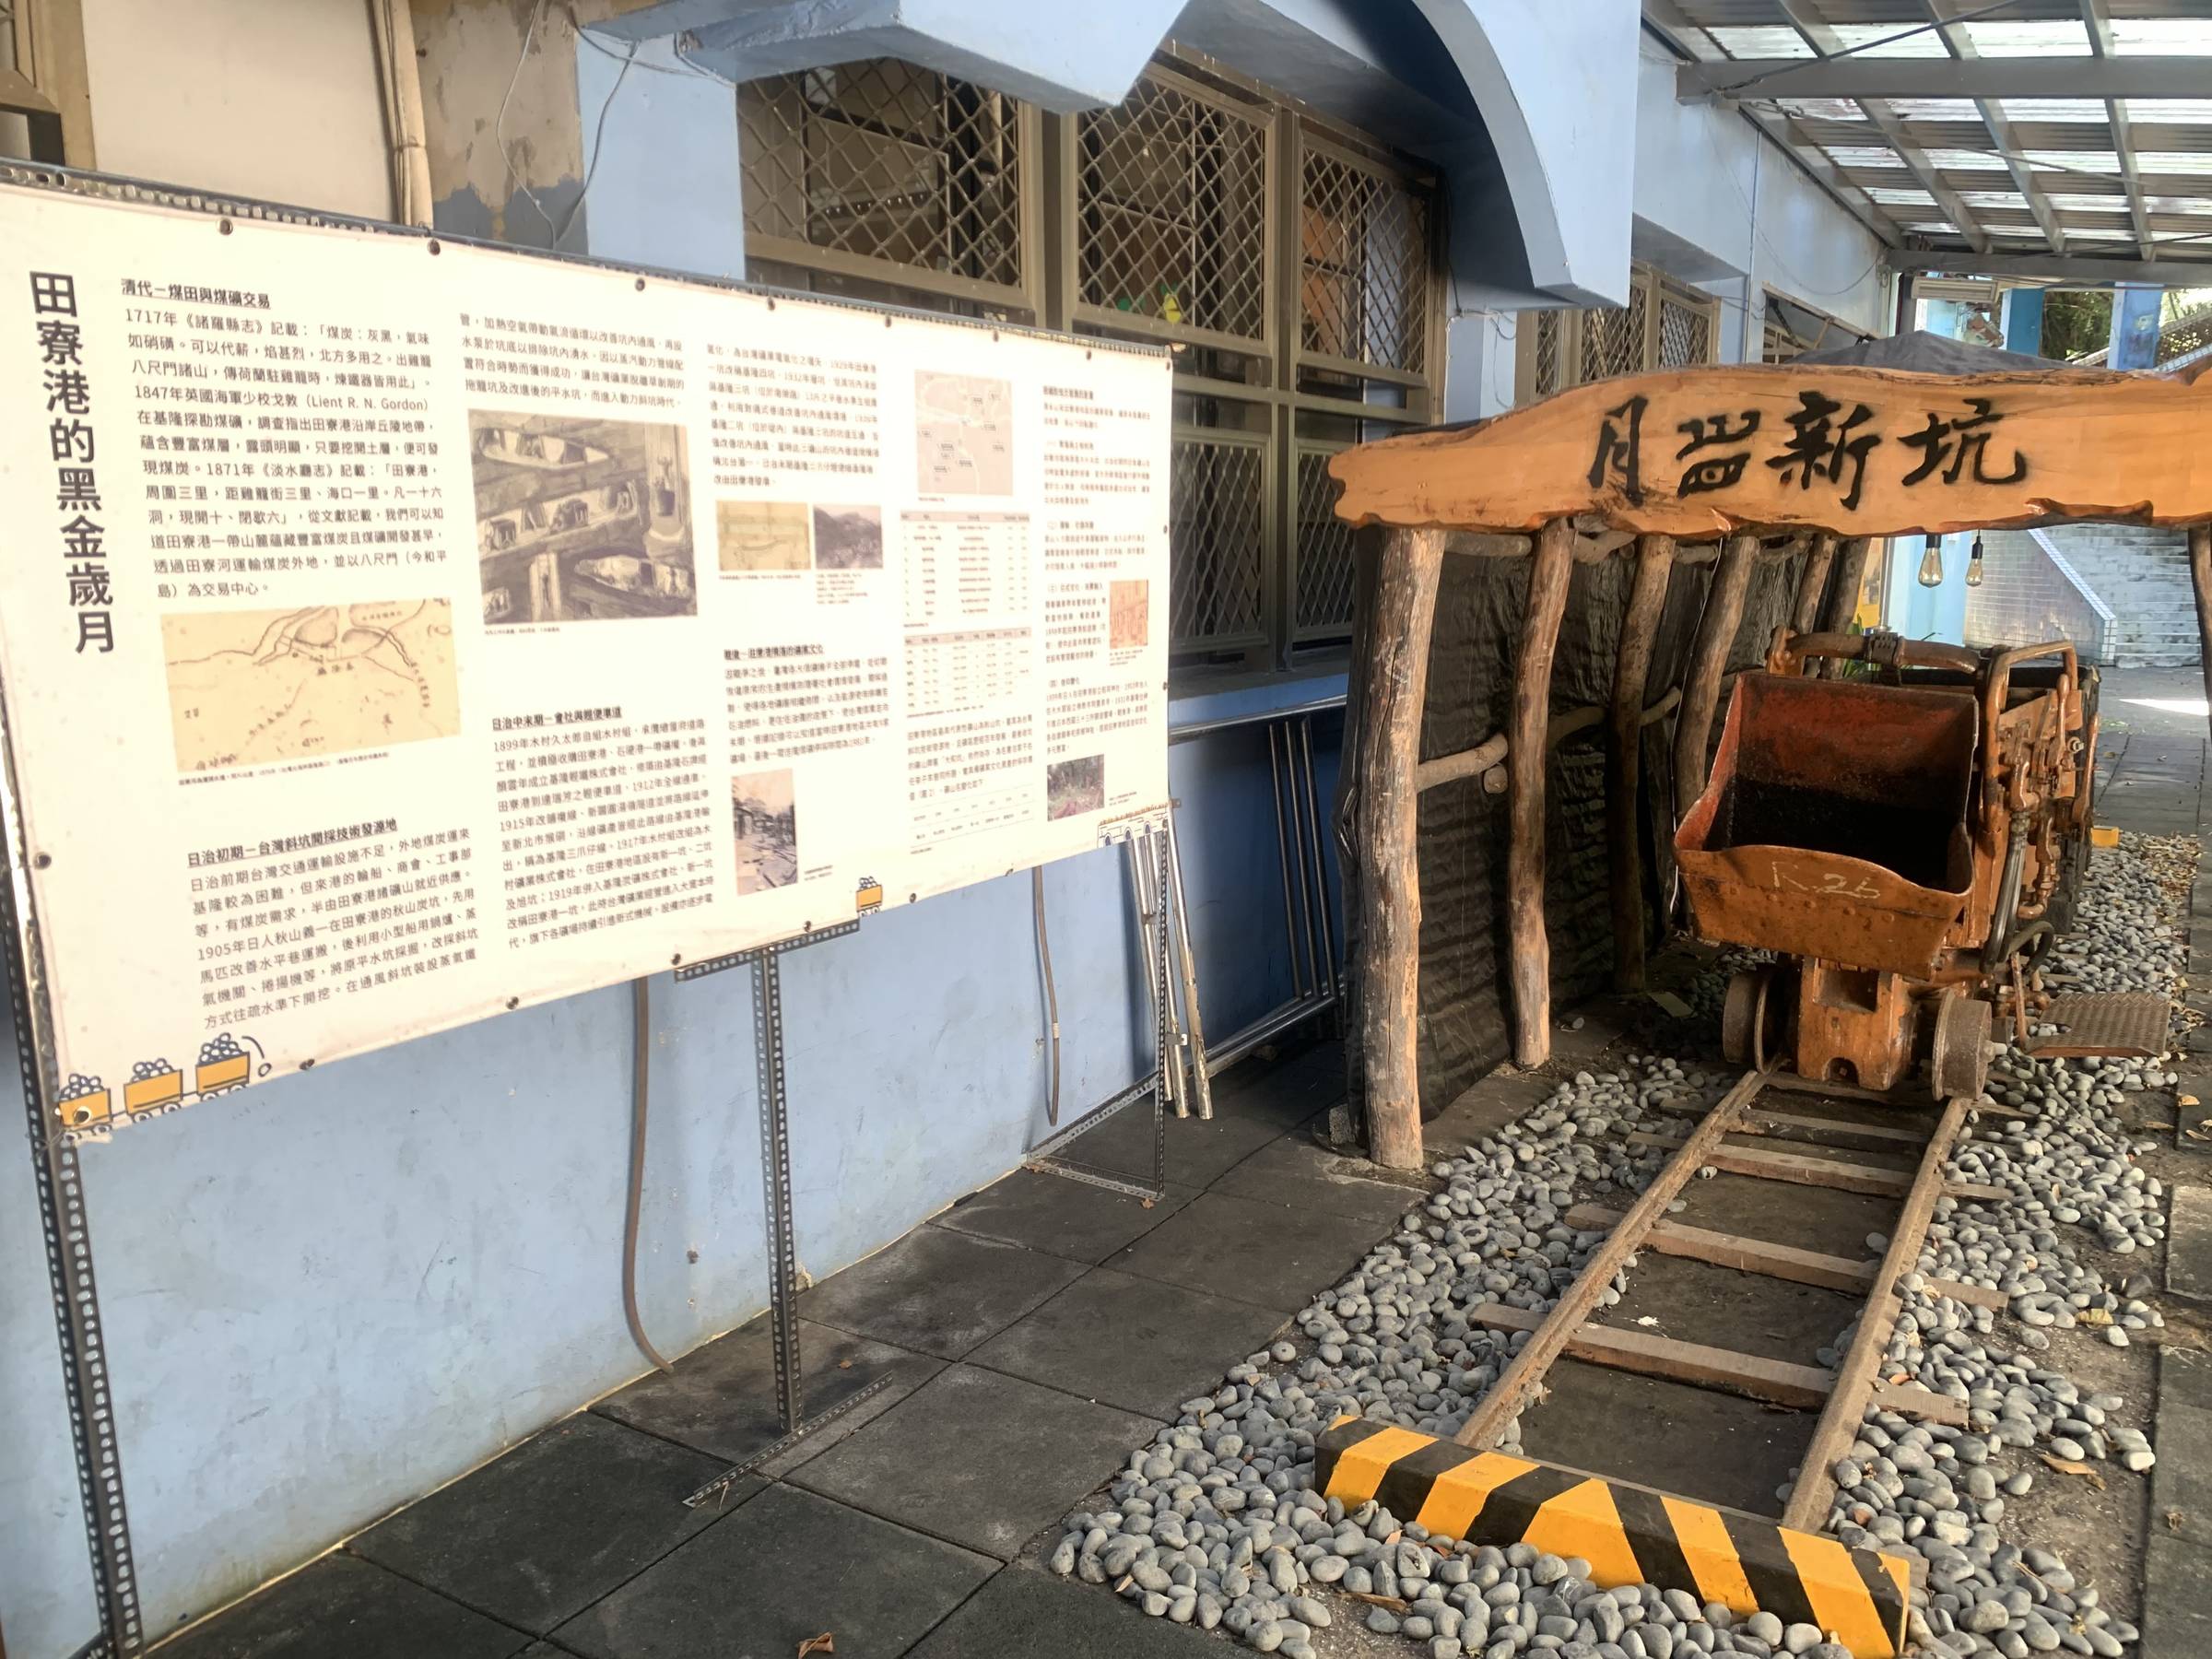 基隆社大展示基隆礦業文化，將礦車搬移到學園內保存